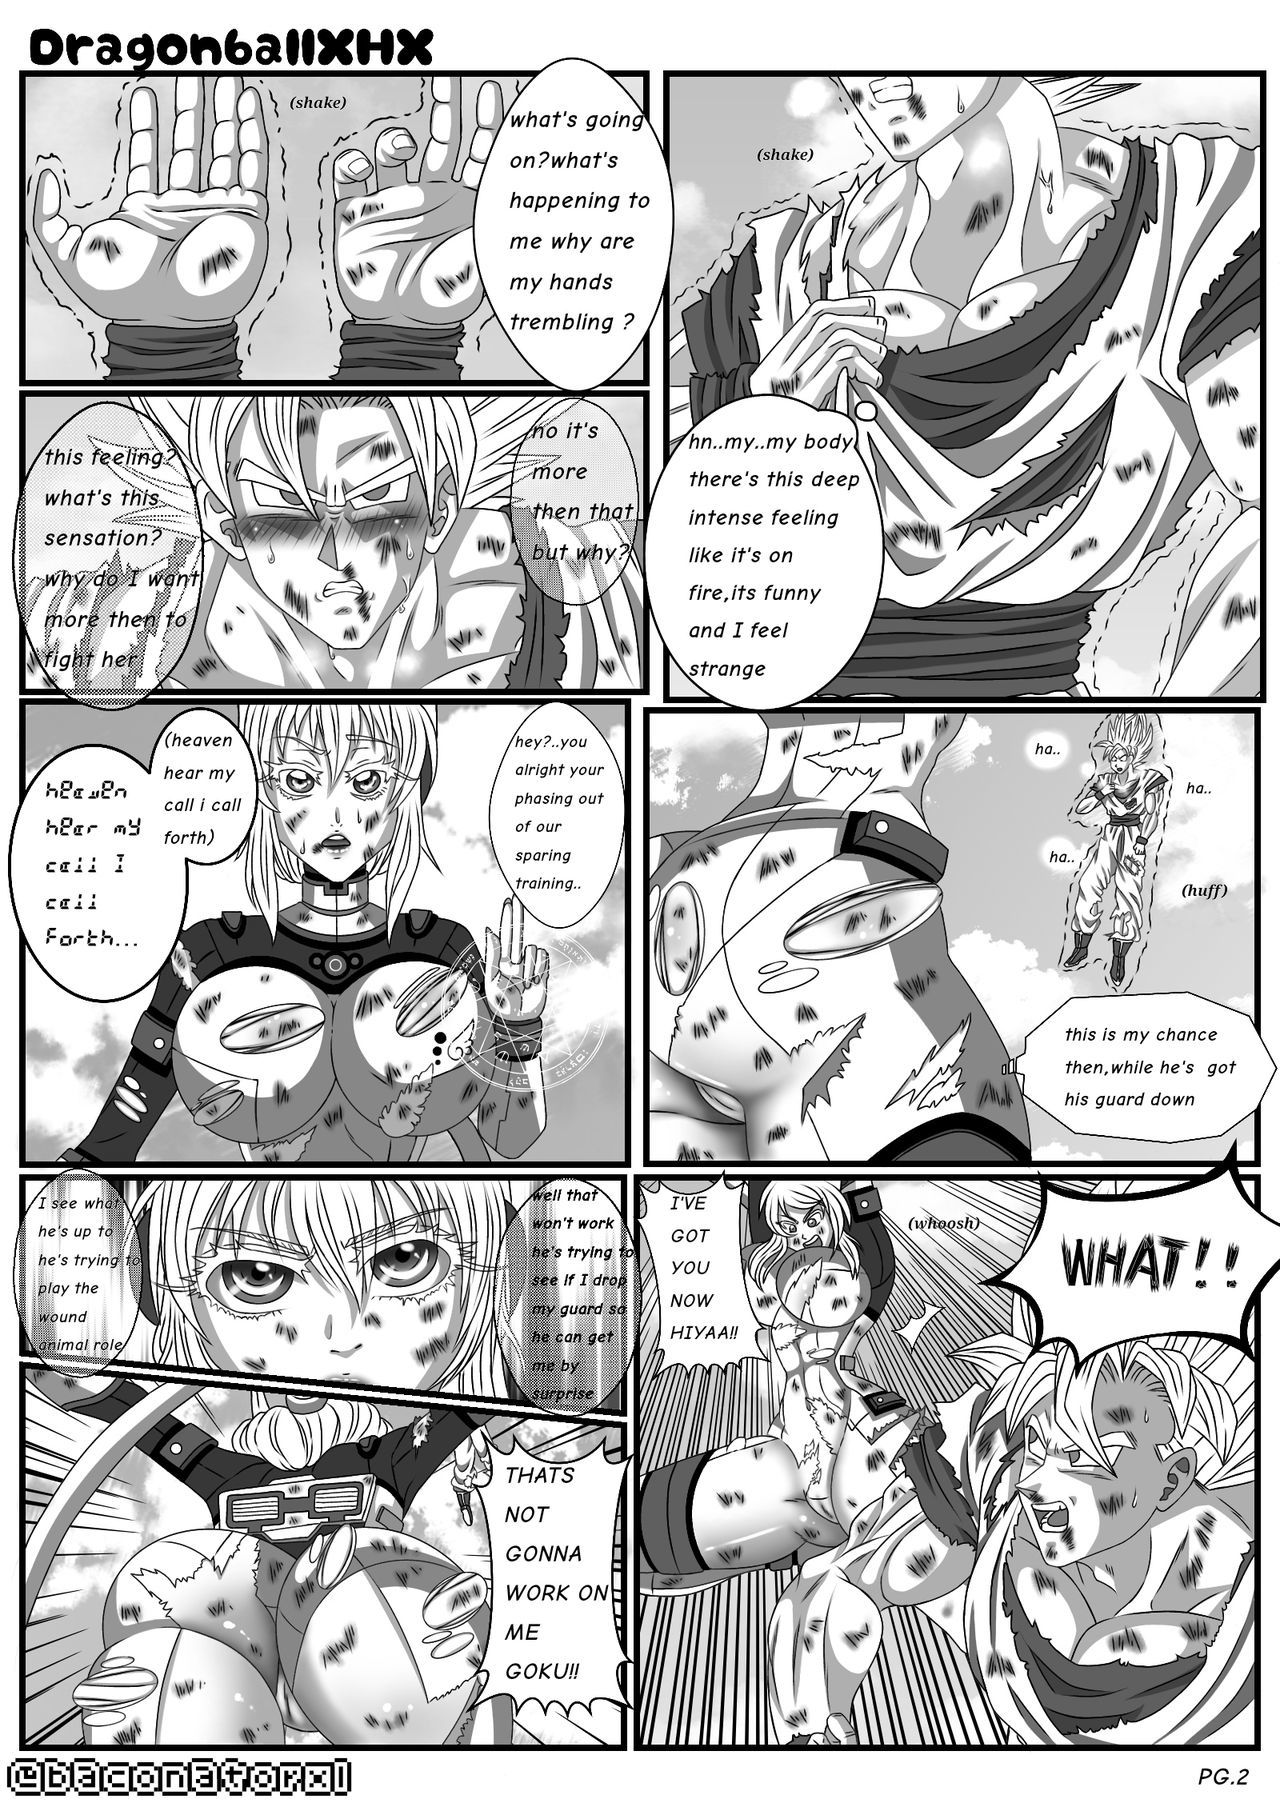 Dragon Ball Z Baconatorxl by XHX page 4